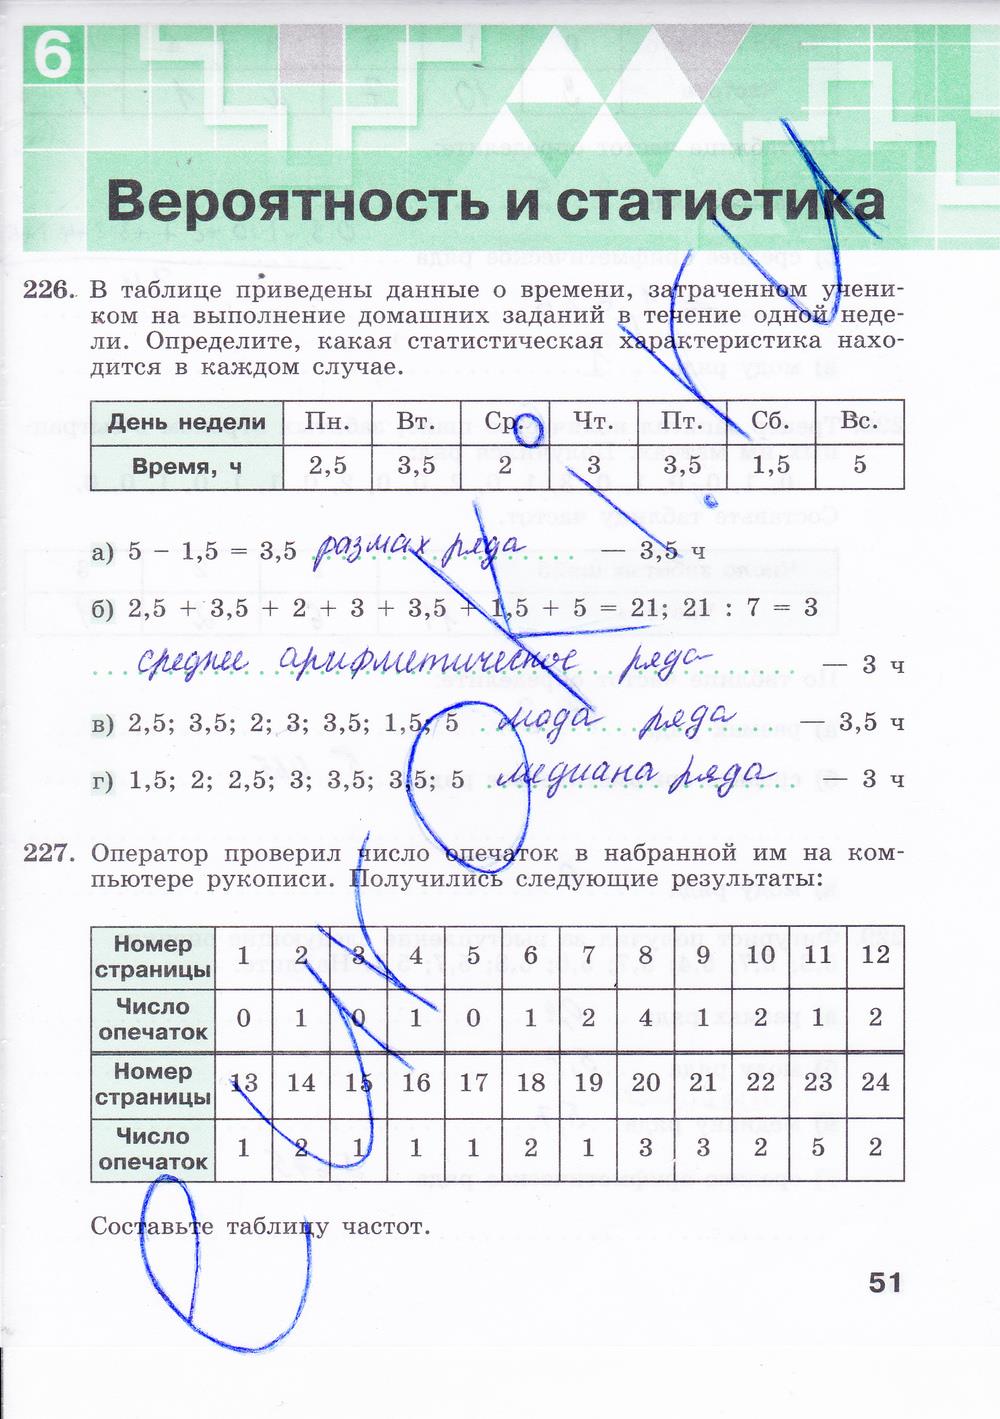 гдз 8 класс рабочая тетрадь часть 2 страница 51 алгебра Минаева, Рослова